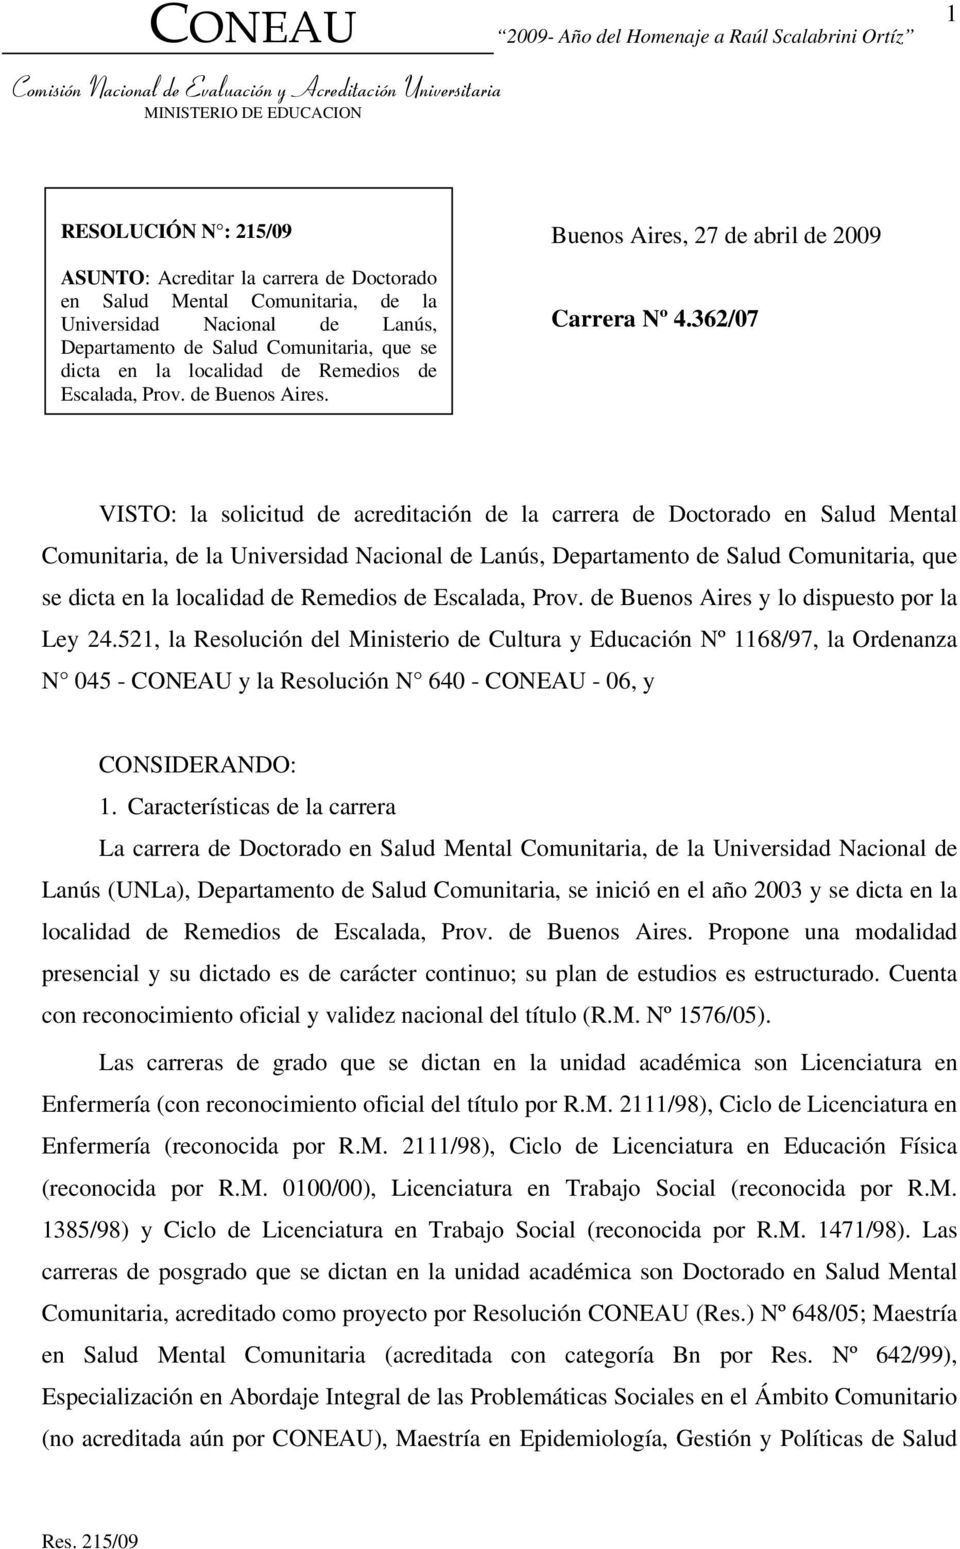 362/07 VISTO: la solicitud de acreditación de la carrera de Doctorado en Salud Mental Comunitaria, de la Universidad Nacional de Lanús, Departamento de Salud Comunitaria, que se dicta en la localidad